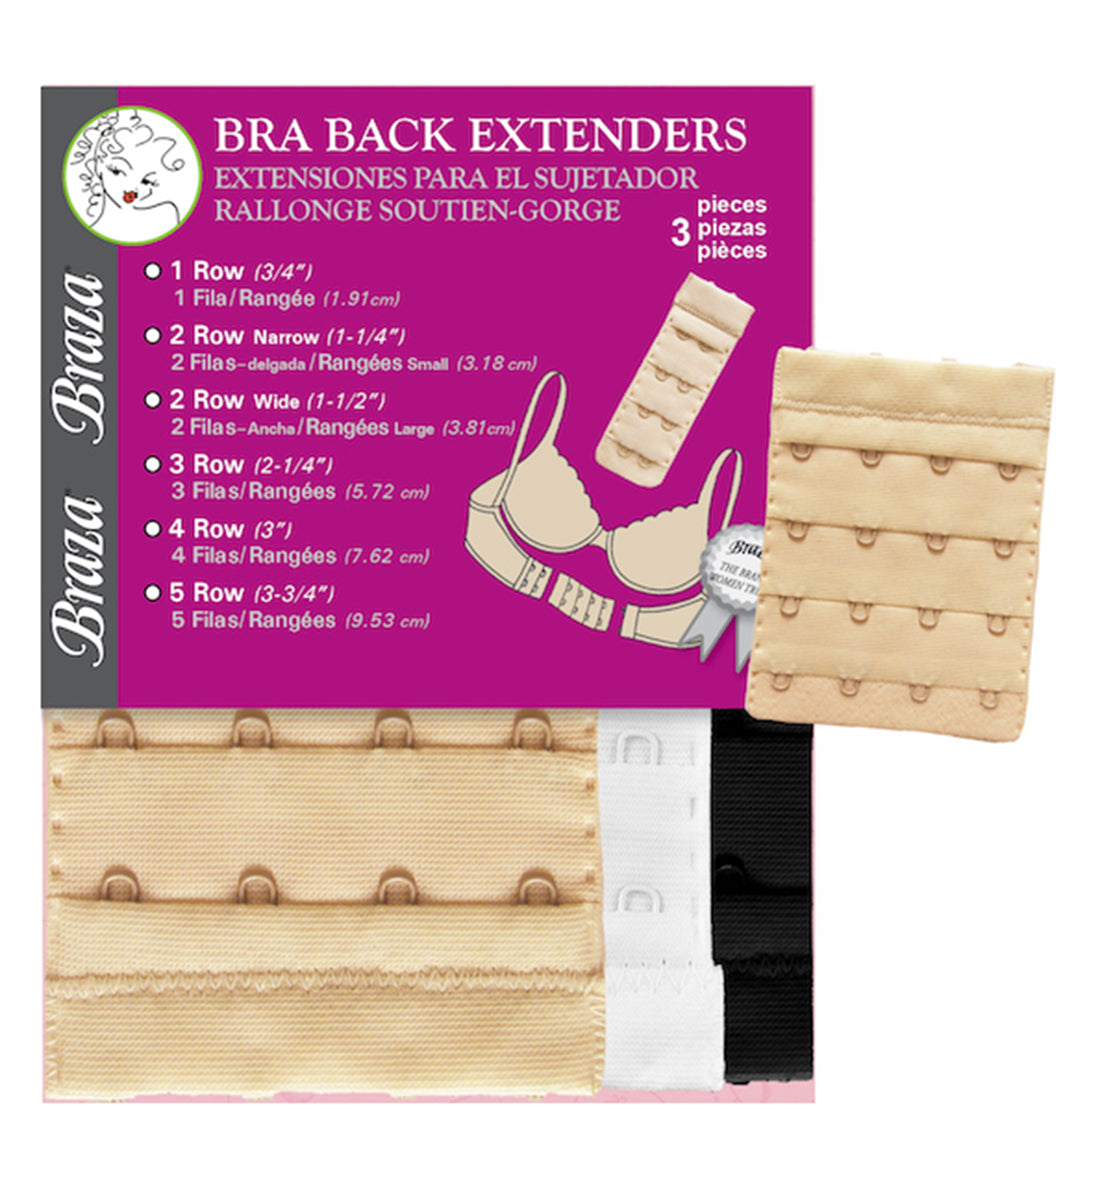 Braza Bra Back Extenders MULTI PACK (B5002),4 Hook,White/Beige/Black - Multi,4 Hook